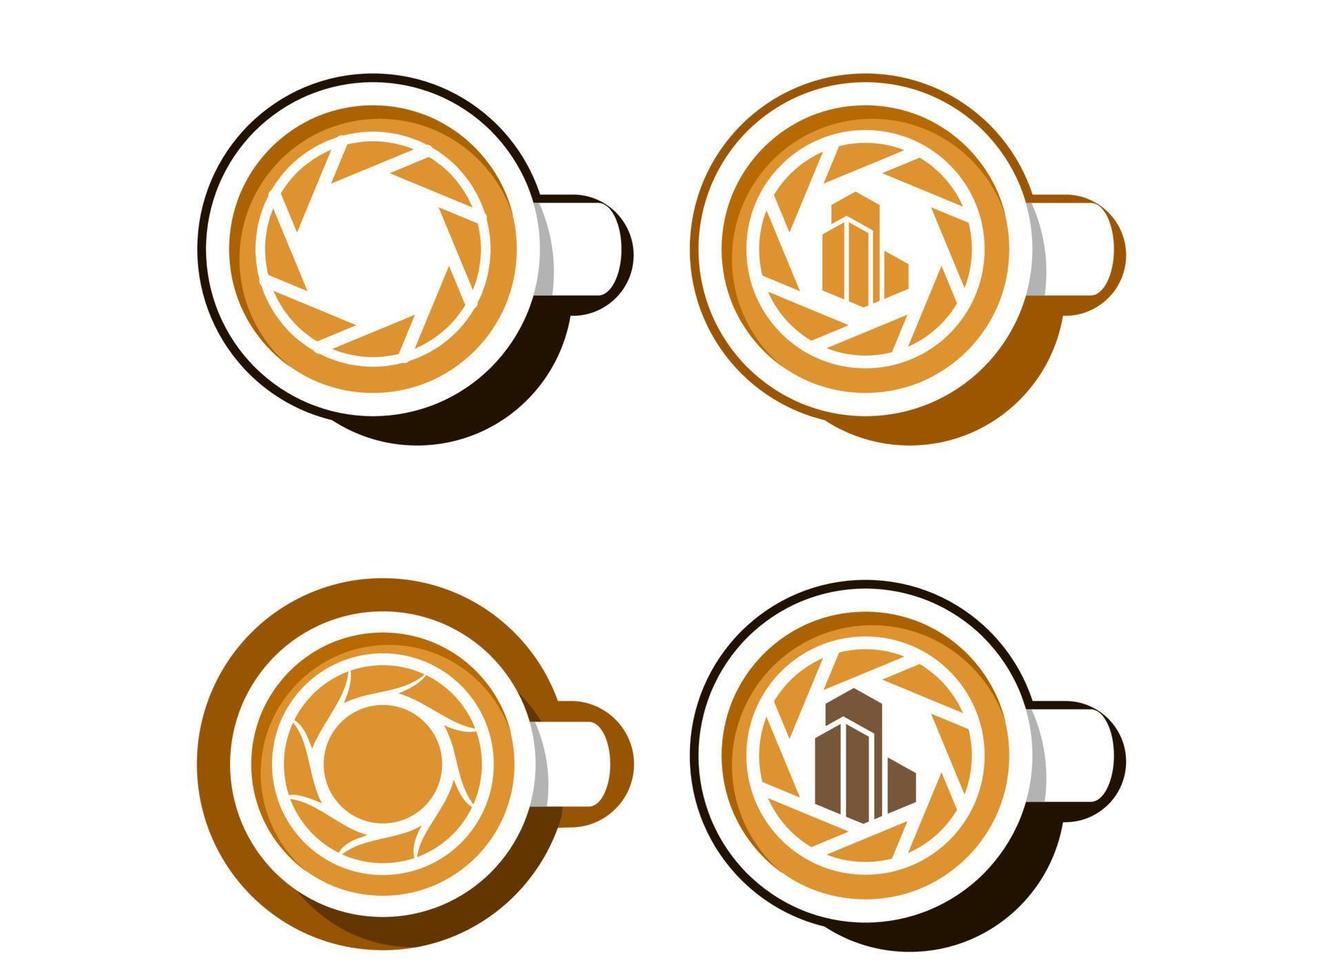 tazza di caffè latte con design del logo del marchio aziendale dell'obiettivo della fotocamera vettore